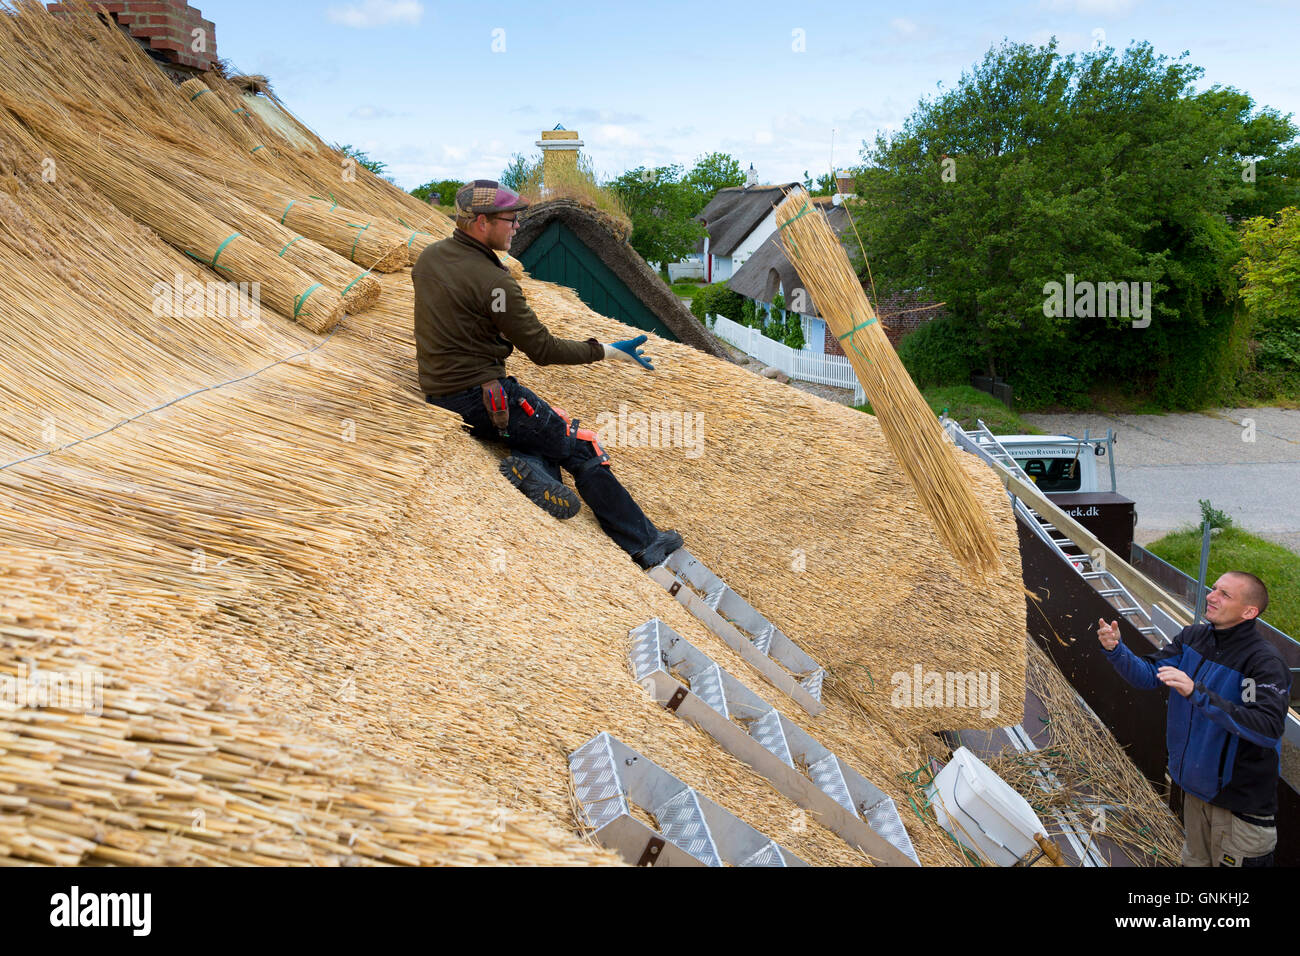 Nouveau toit de chaume Thatchers méthode traditionnelle avec meules de roseaux/se précipite sur chaumière, l'île de Fano, Danemark Banque D'Images